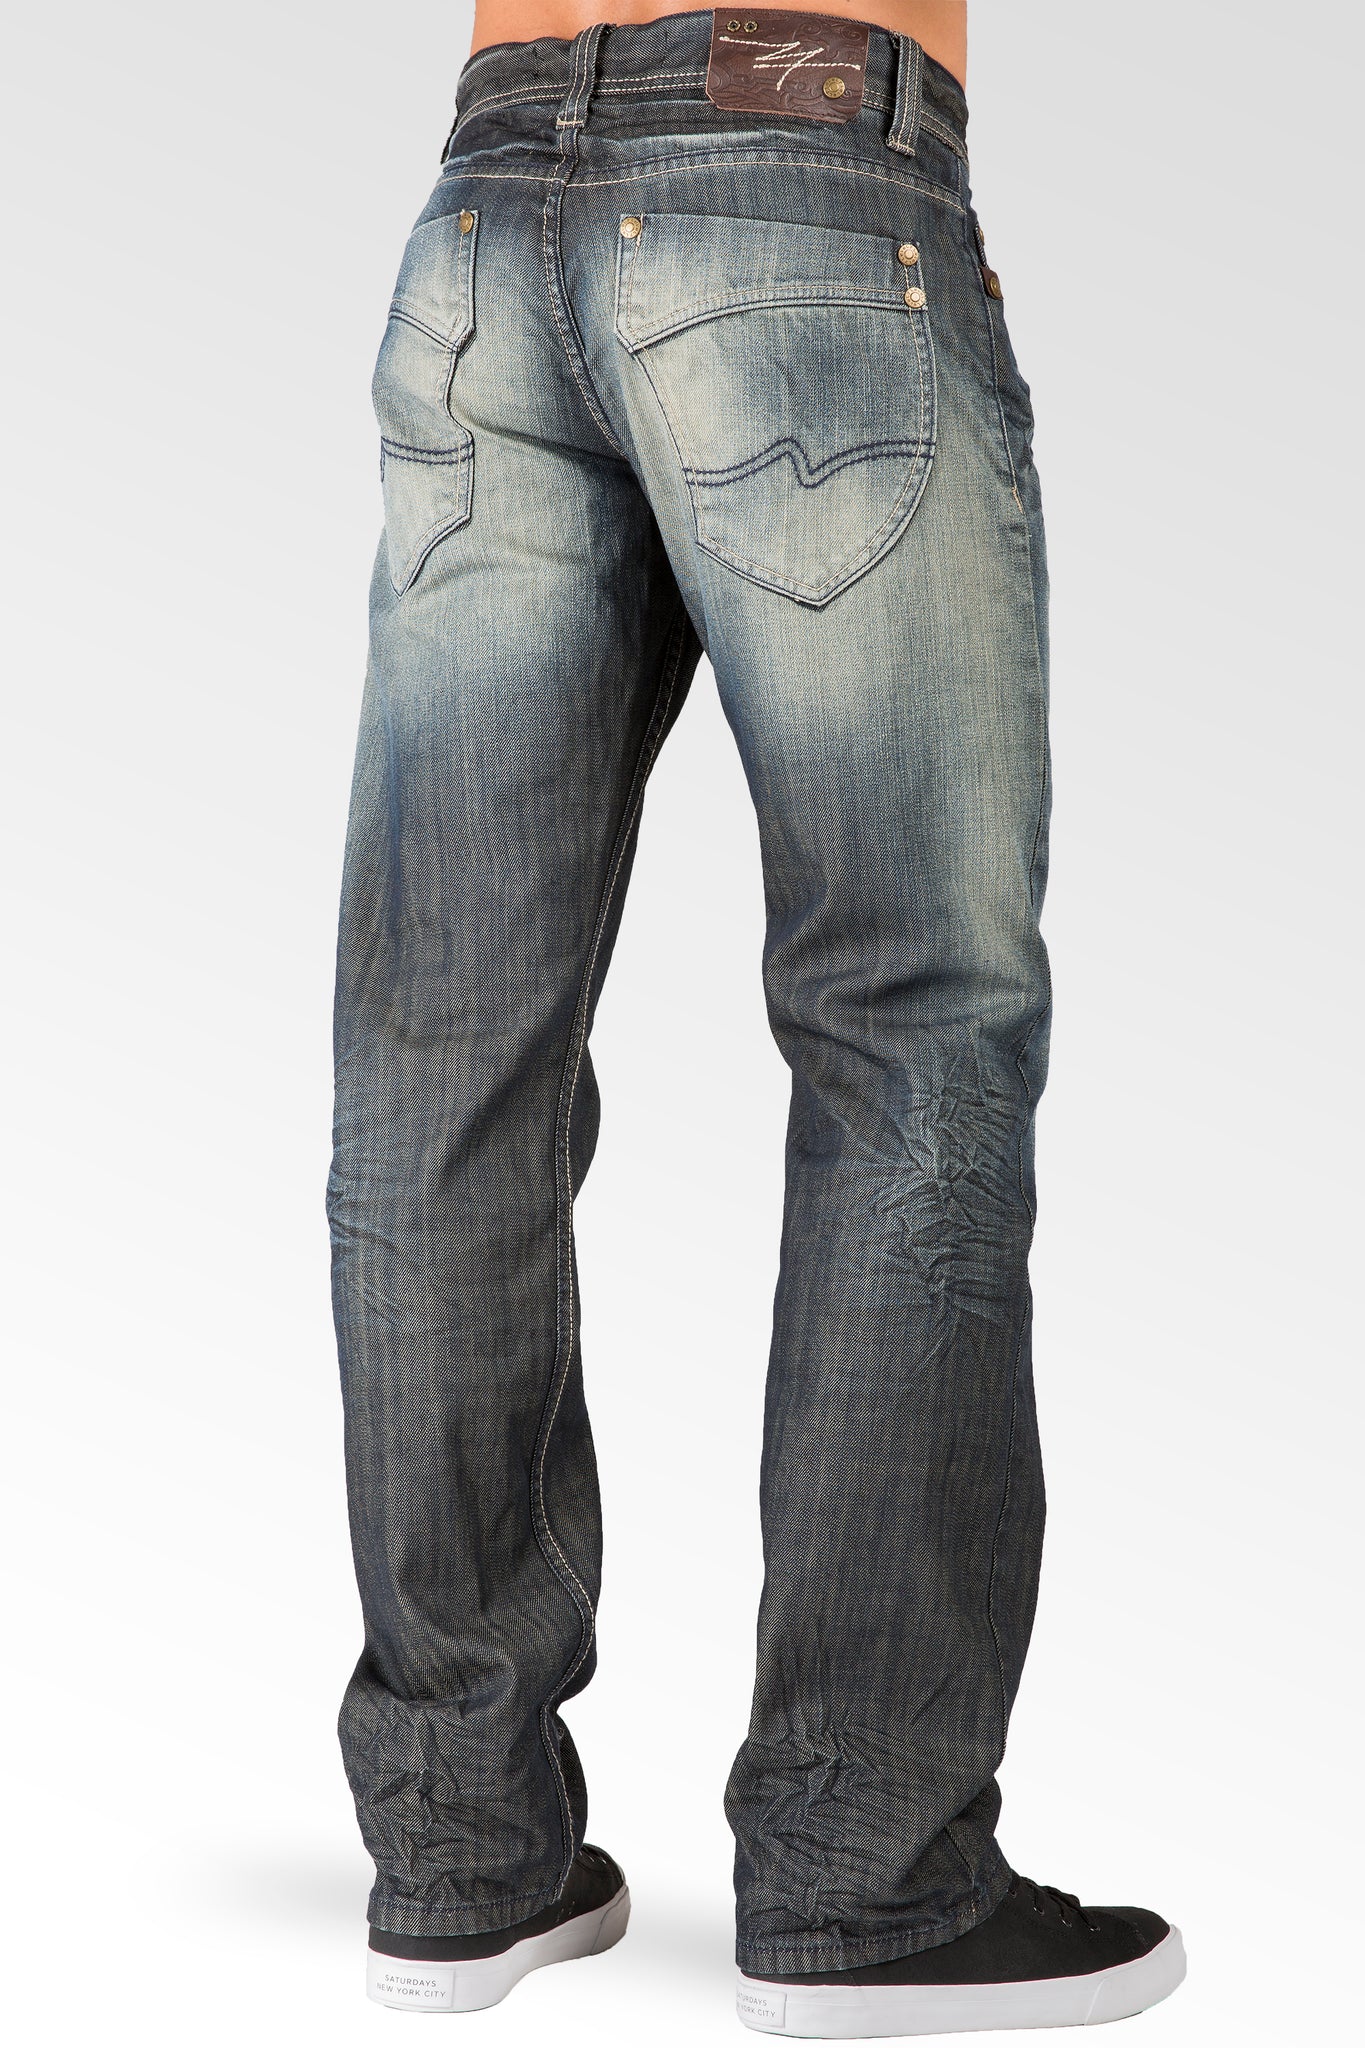 Dark Tint Relaxed Straight Leg Premium Denim signature 5 pocket Jeans Wrinkle Whiskering